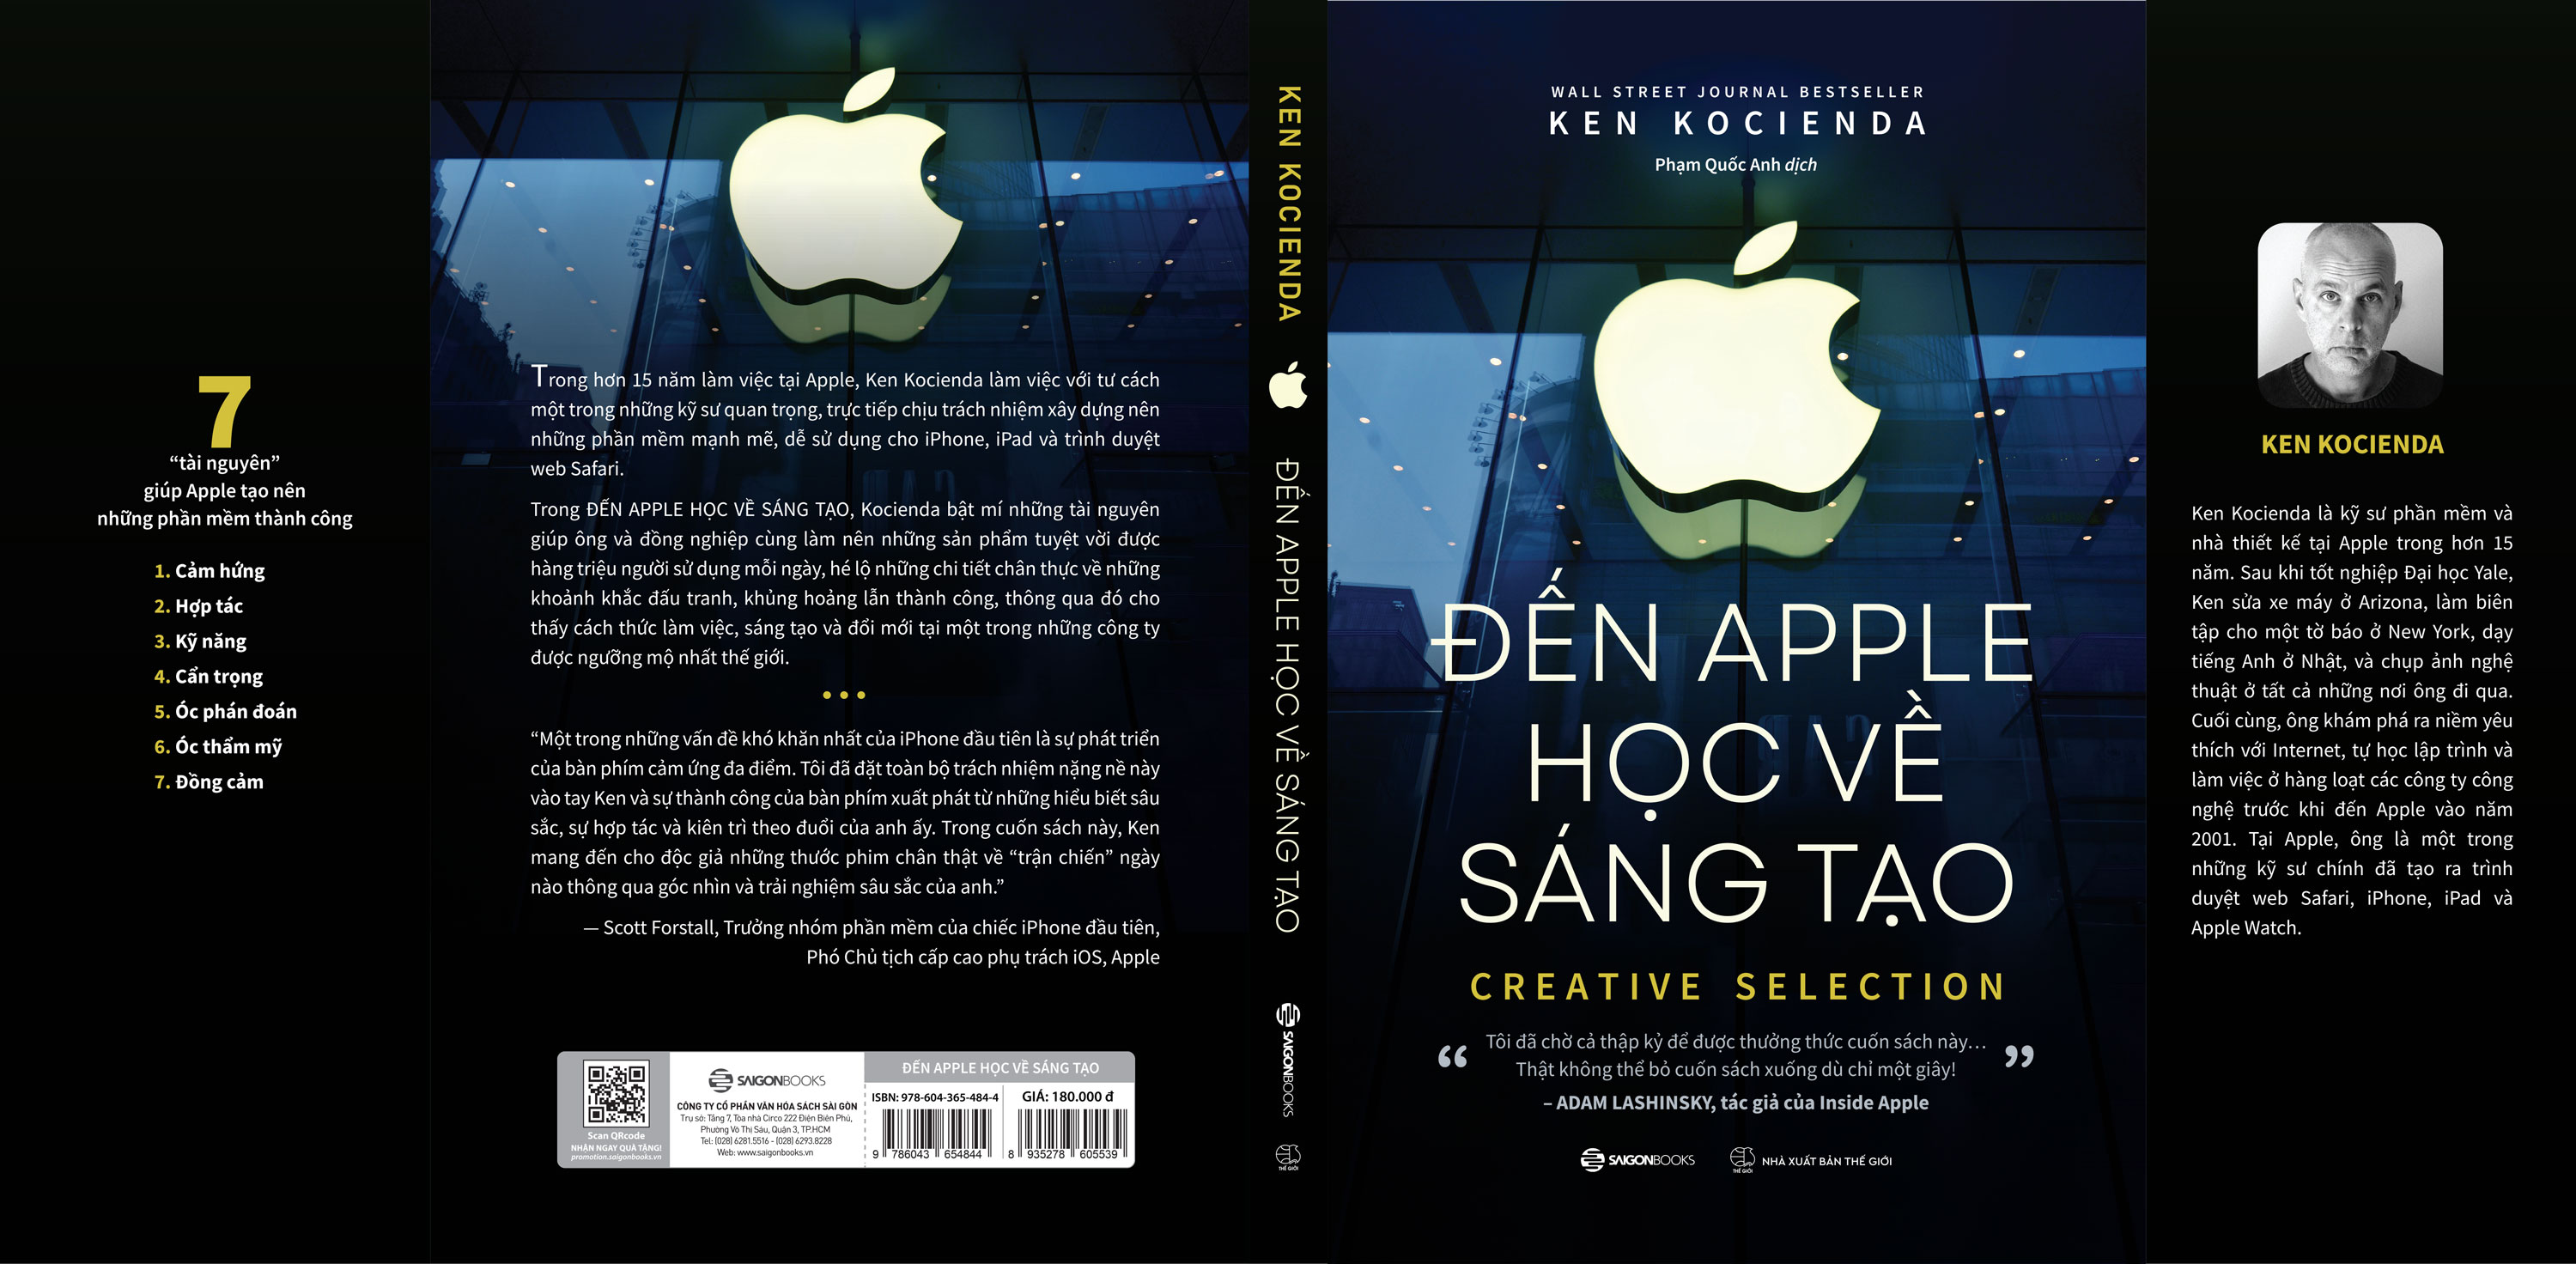 Đến Apple học về sáng tạo - Tác giả Ken Kocienda